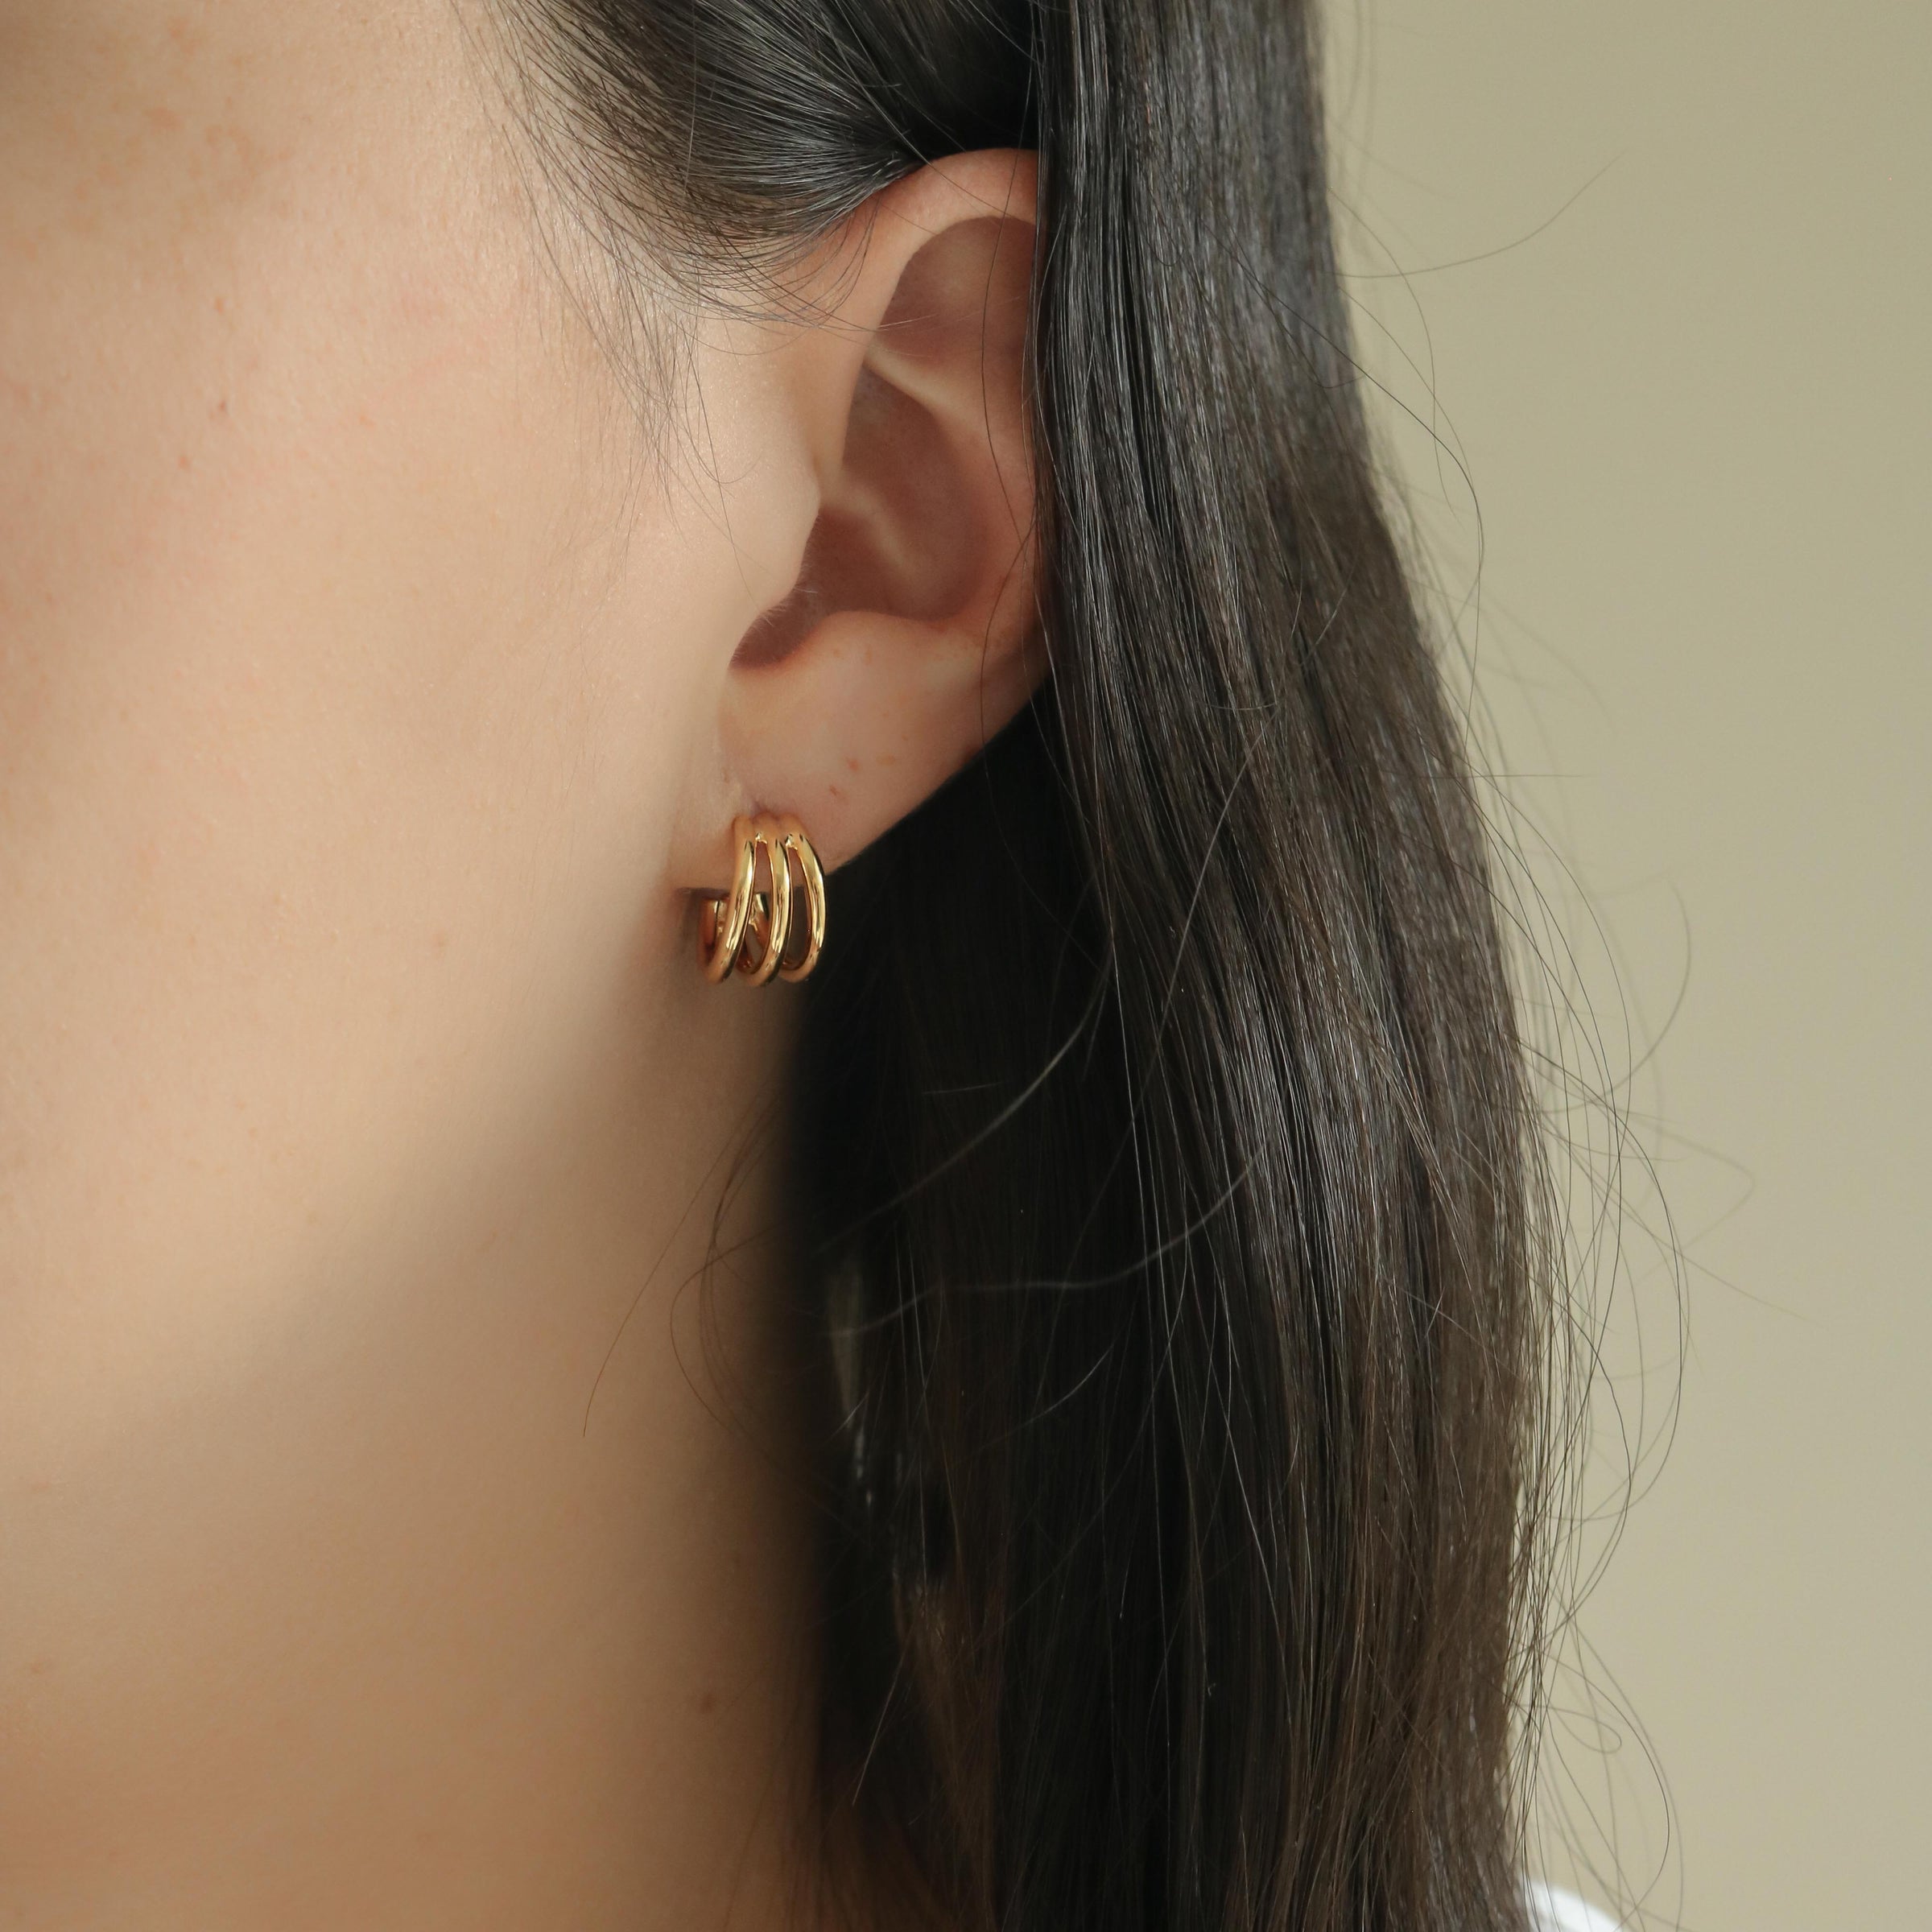 Black Axe Earrings -3D Double Sided Ear Studs Ring 26MM Screw Back Jewelry  1Pair | eBay